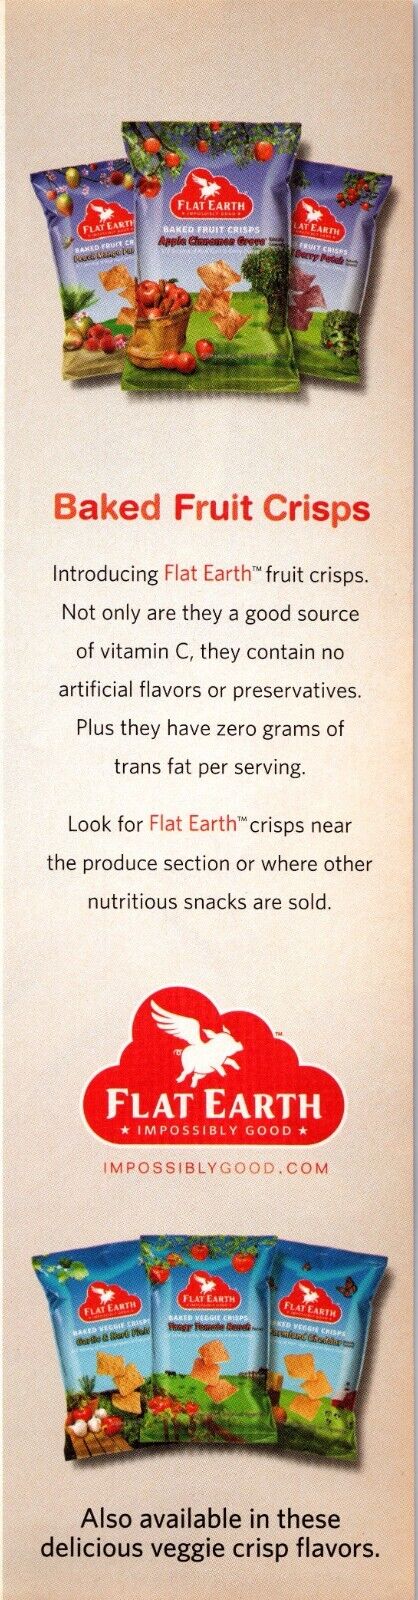 2007 Flat Earth Baked Fruit Crisps Zero Grams Of Trans Fat Per Serving Print Ad